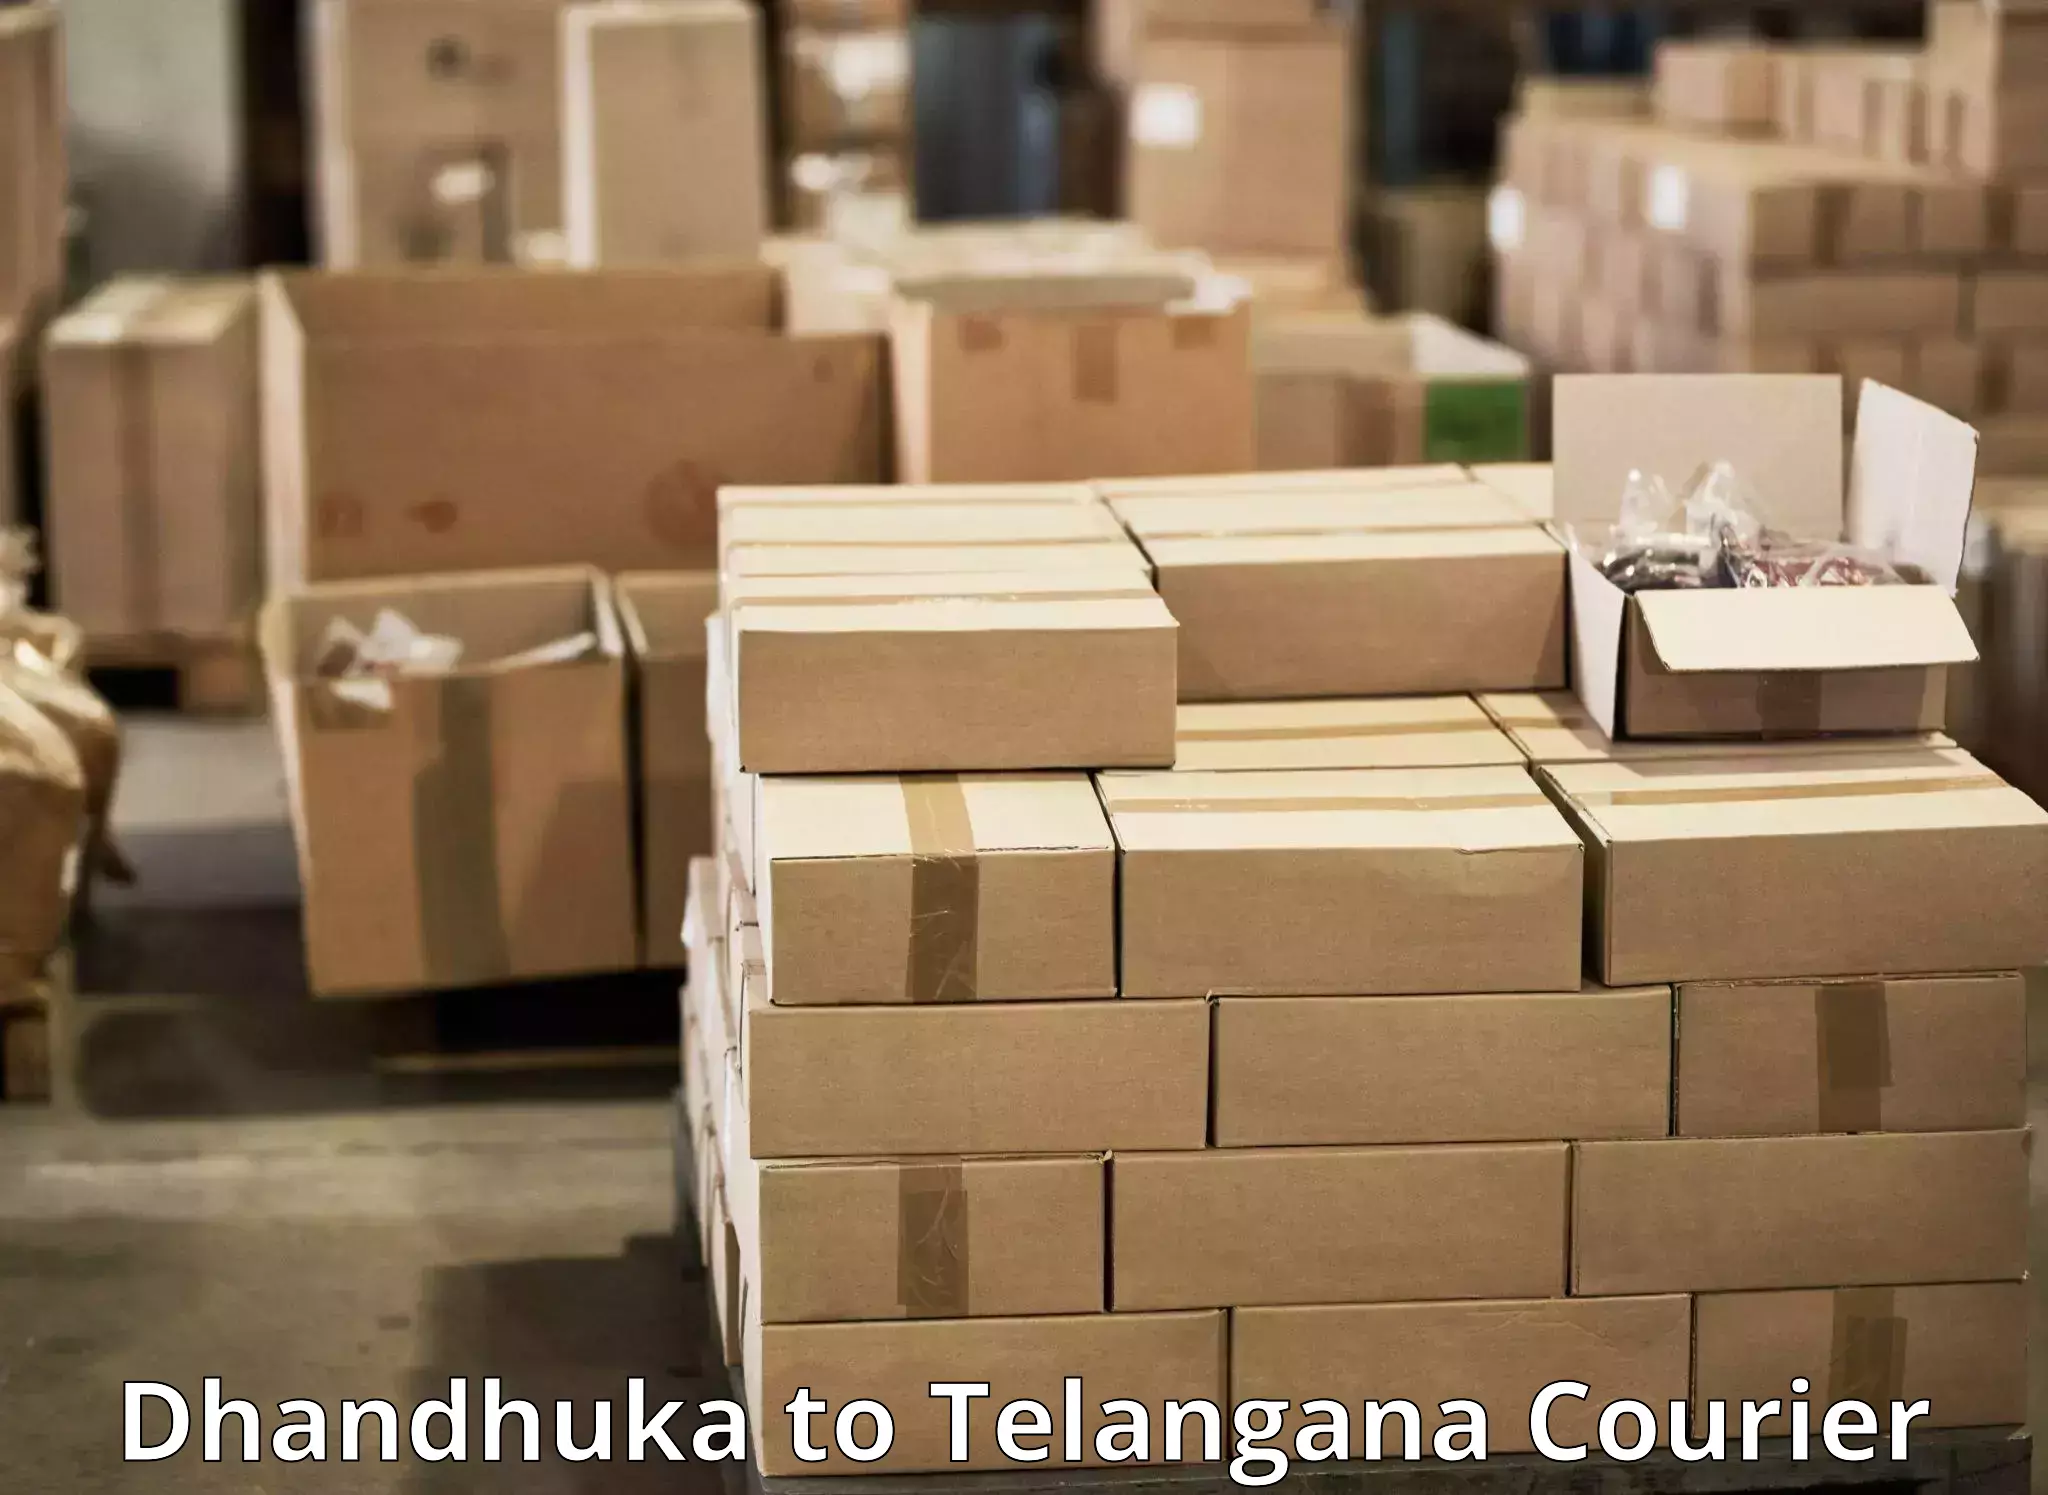 Express courier capabilities Dhandhuka to Yellareddipet